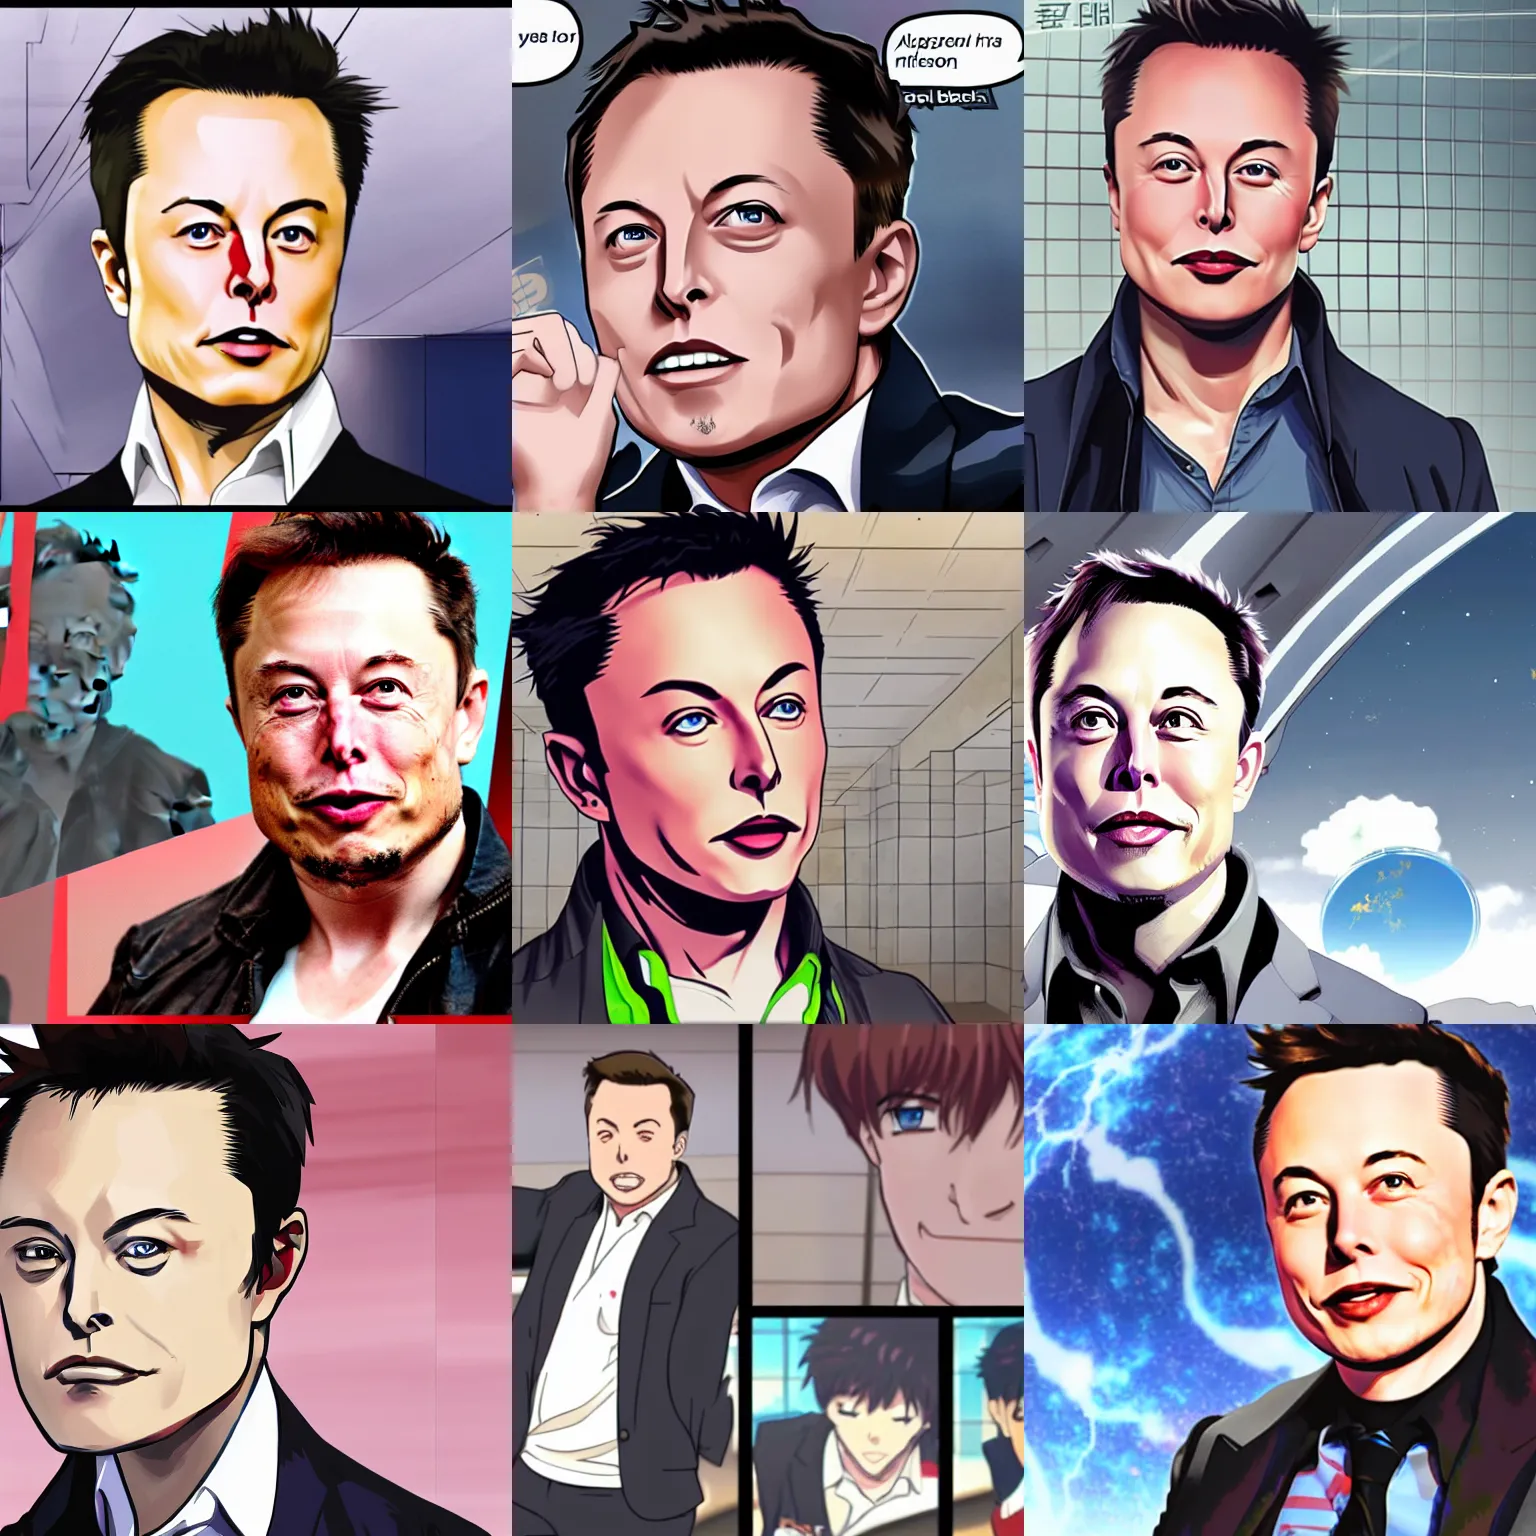 Prompt: Elon musk as an anime character, screenshot